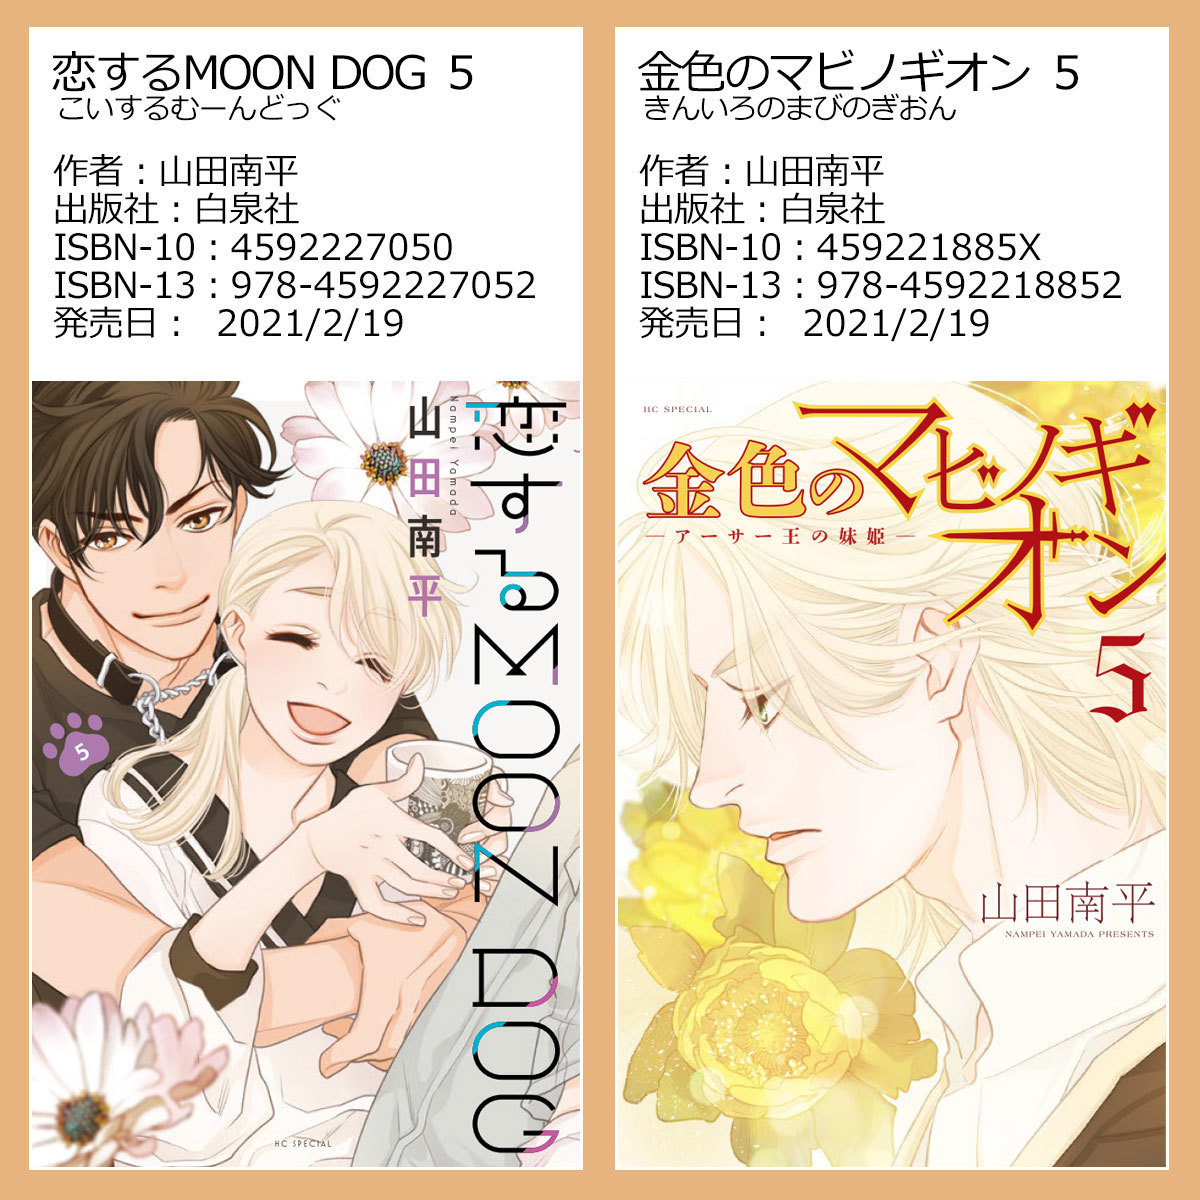 『恋する MOON DOG』5巻 先行配信情報_a0342172_08502655.jpg